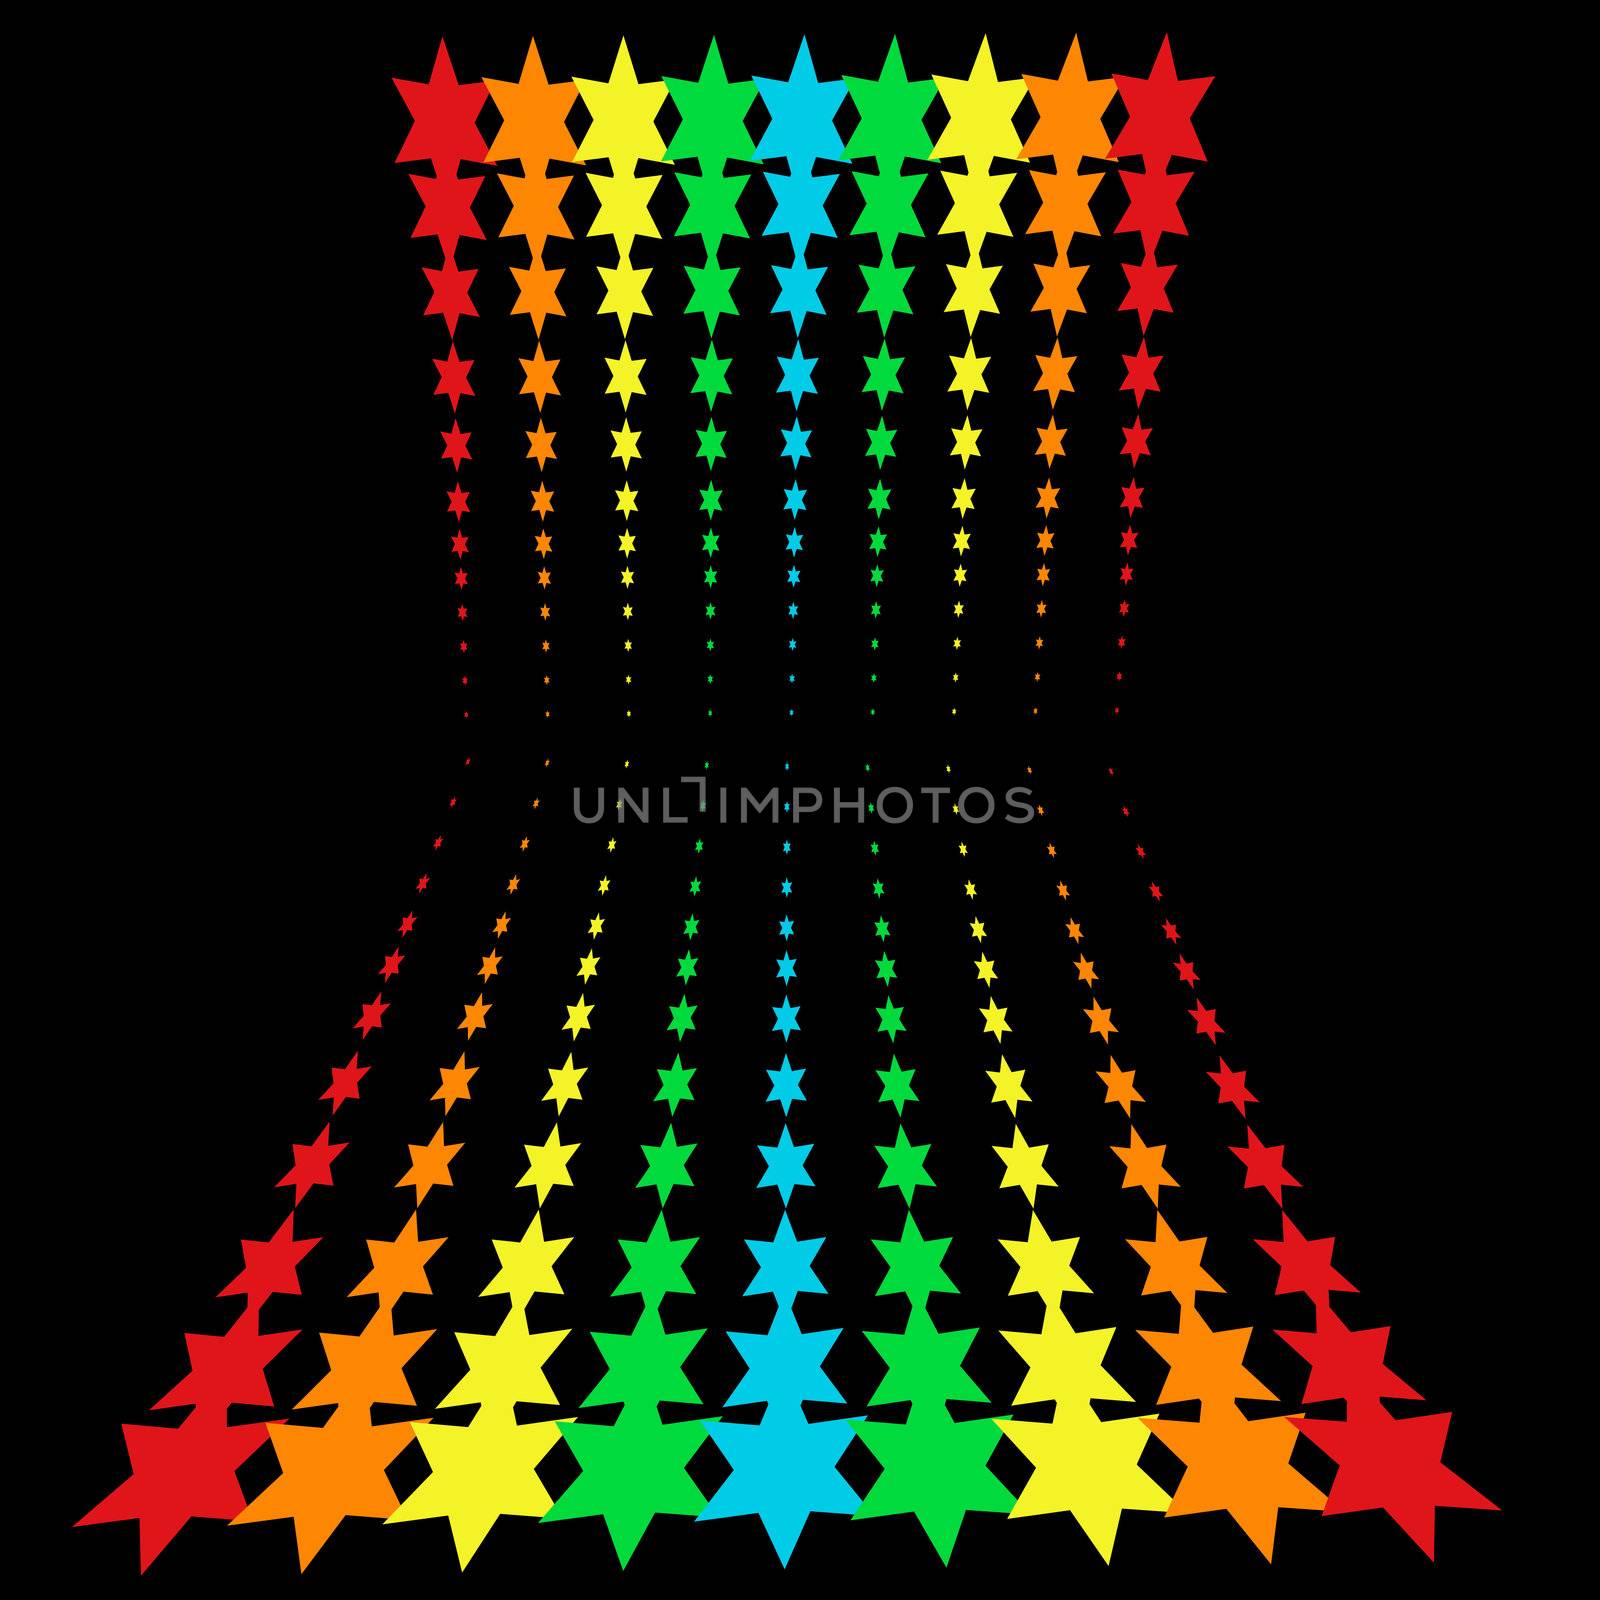 rainbow stars by hospitalera